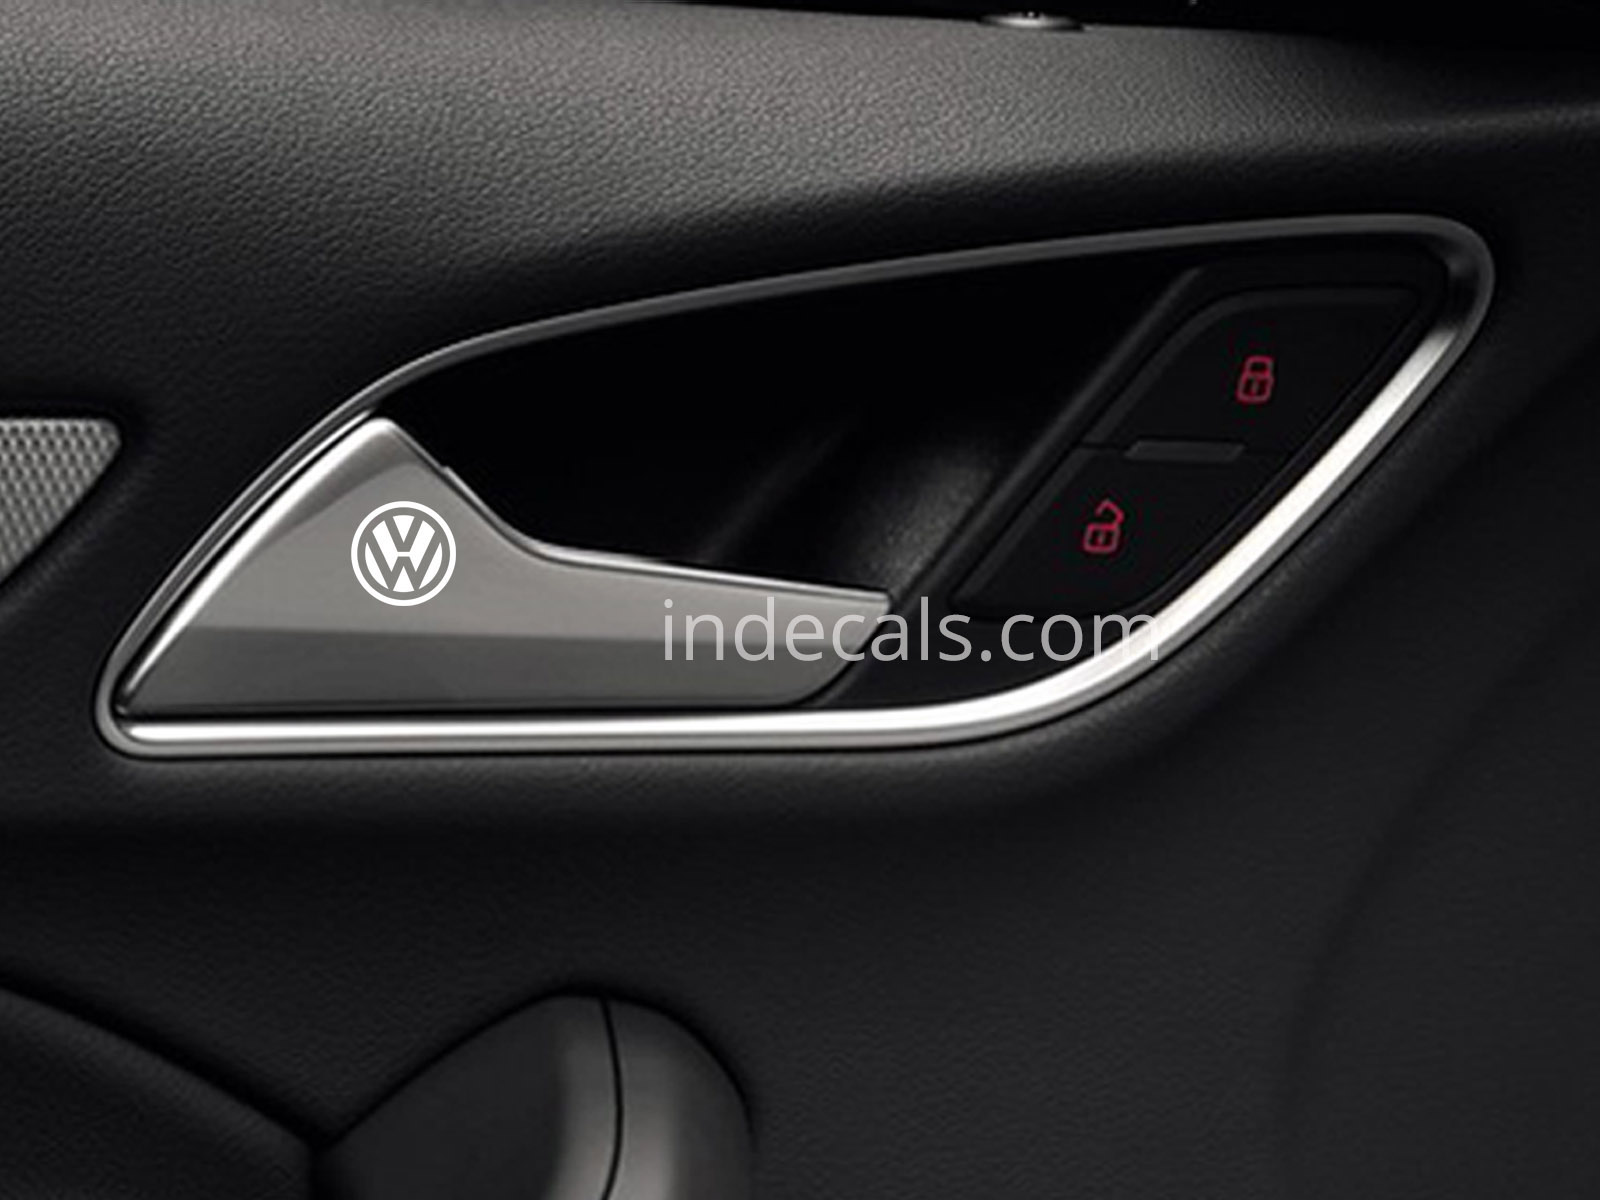 6 x Volkswagen Stickers for Door Handle - White